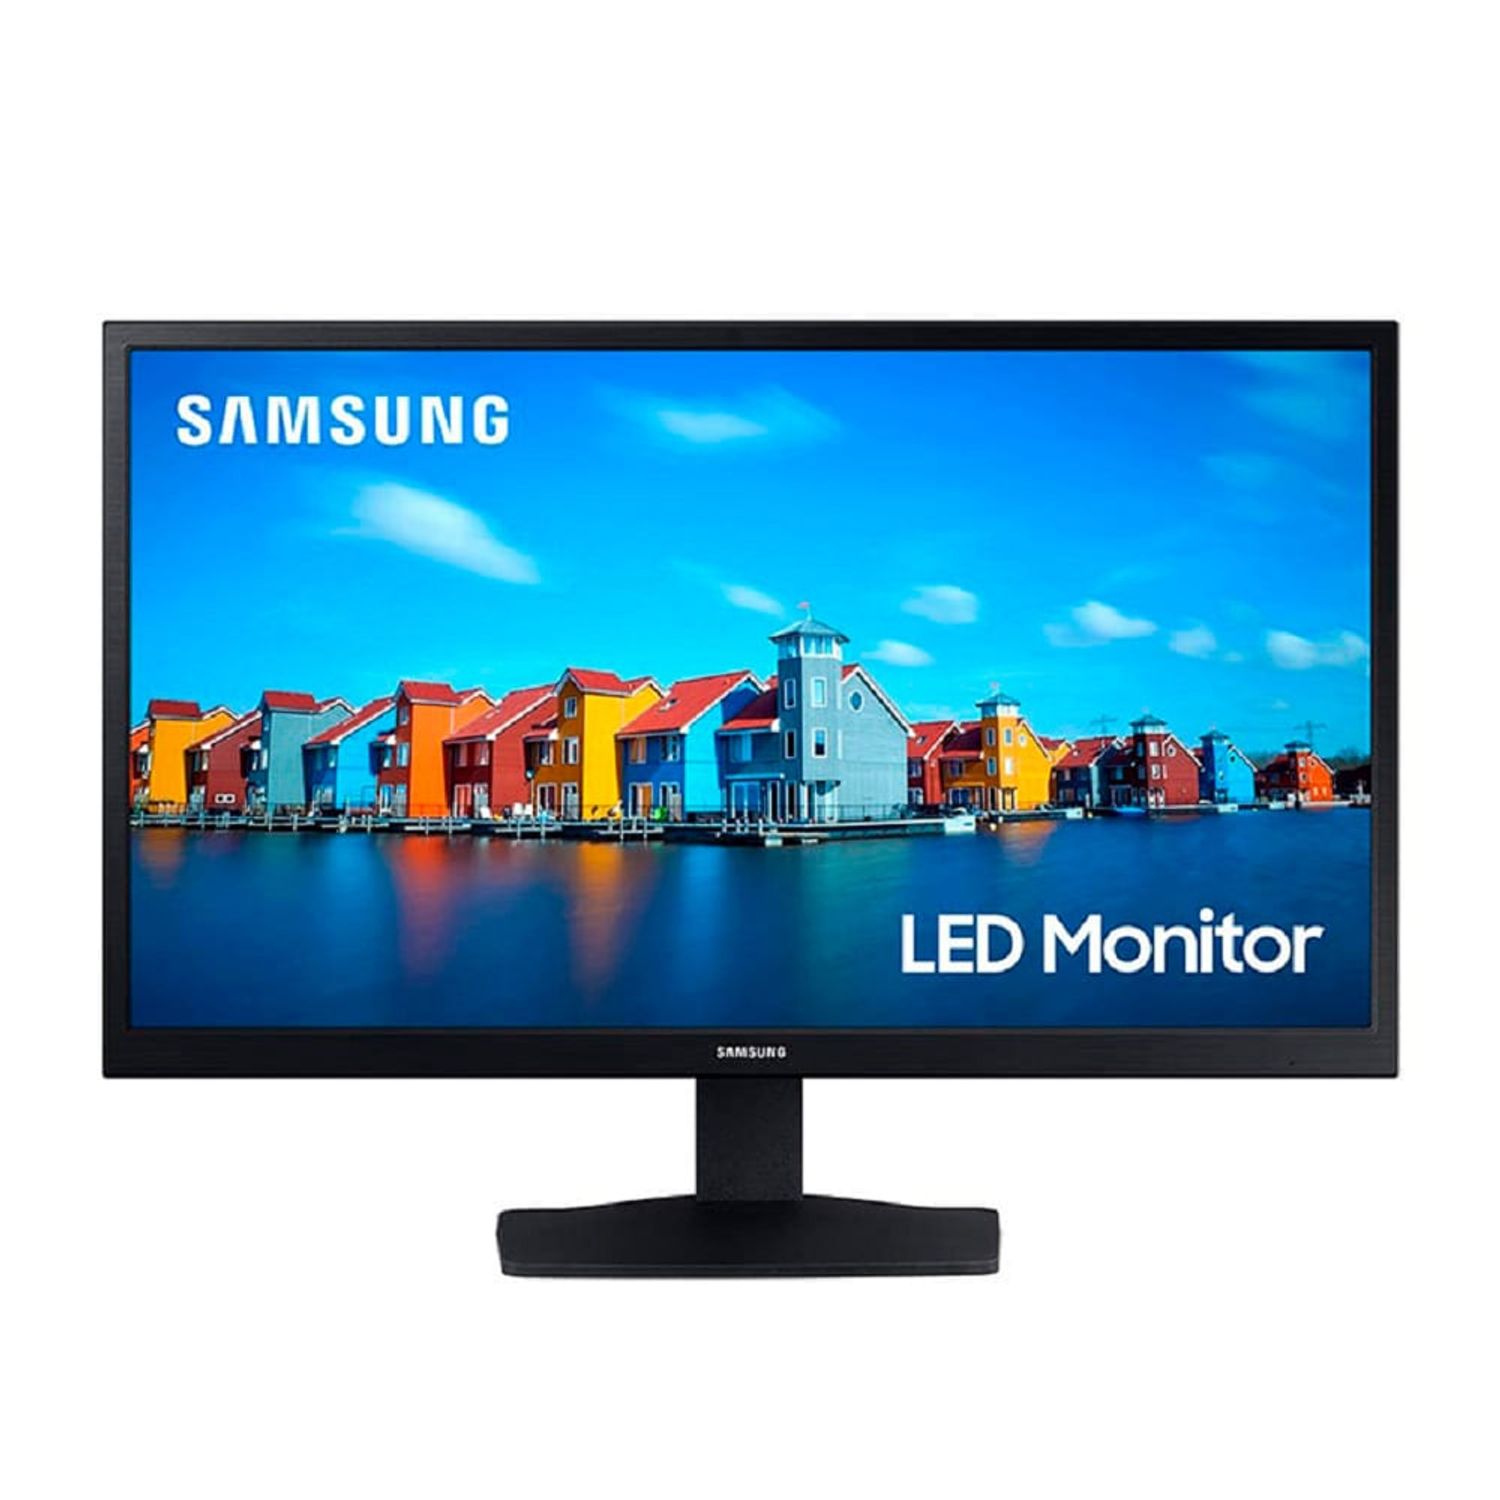 Monitor Samsung Flat LED 19 Pulgadas LS19A330NH TN 1366 x 768 VGA HDMI  Negro Oferta